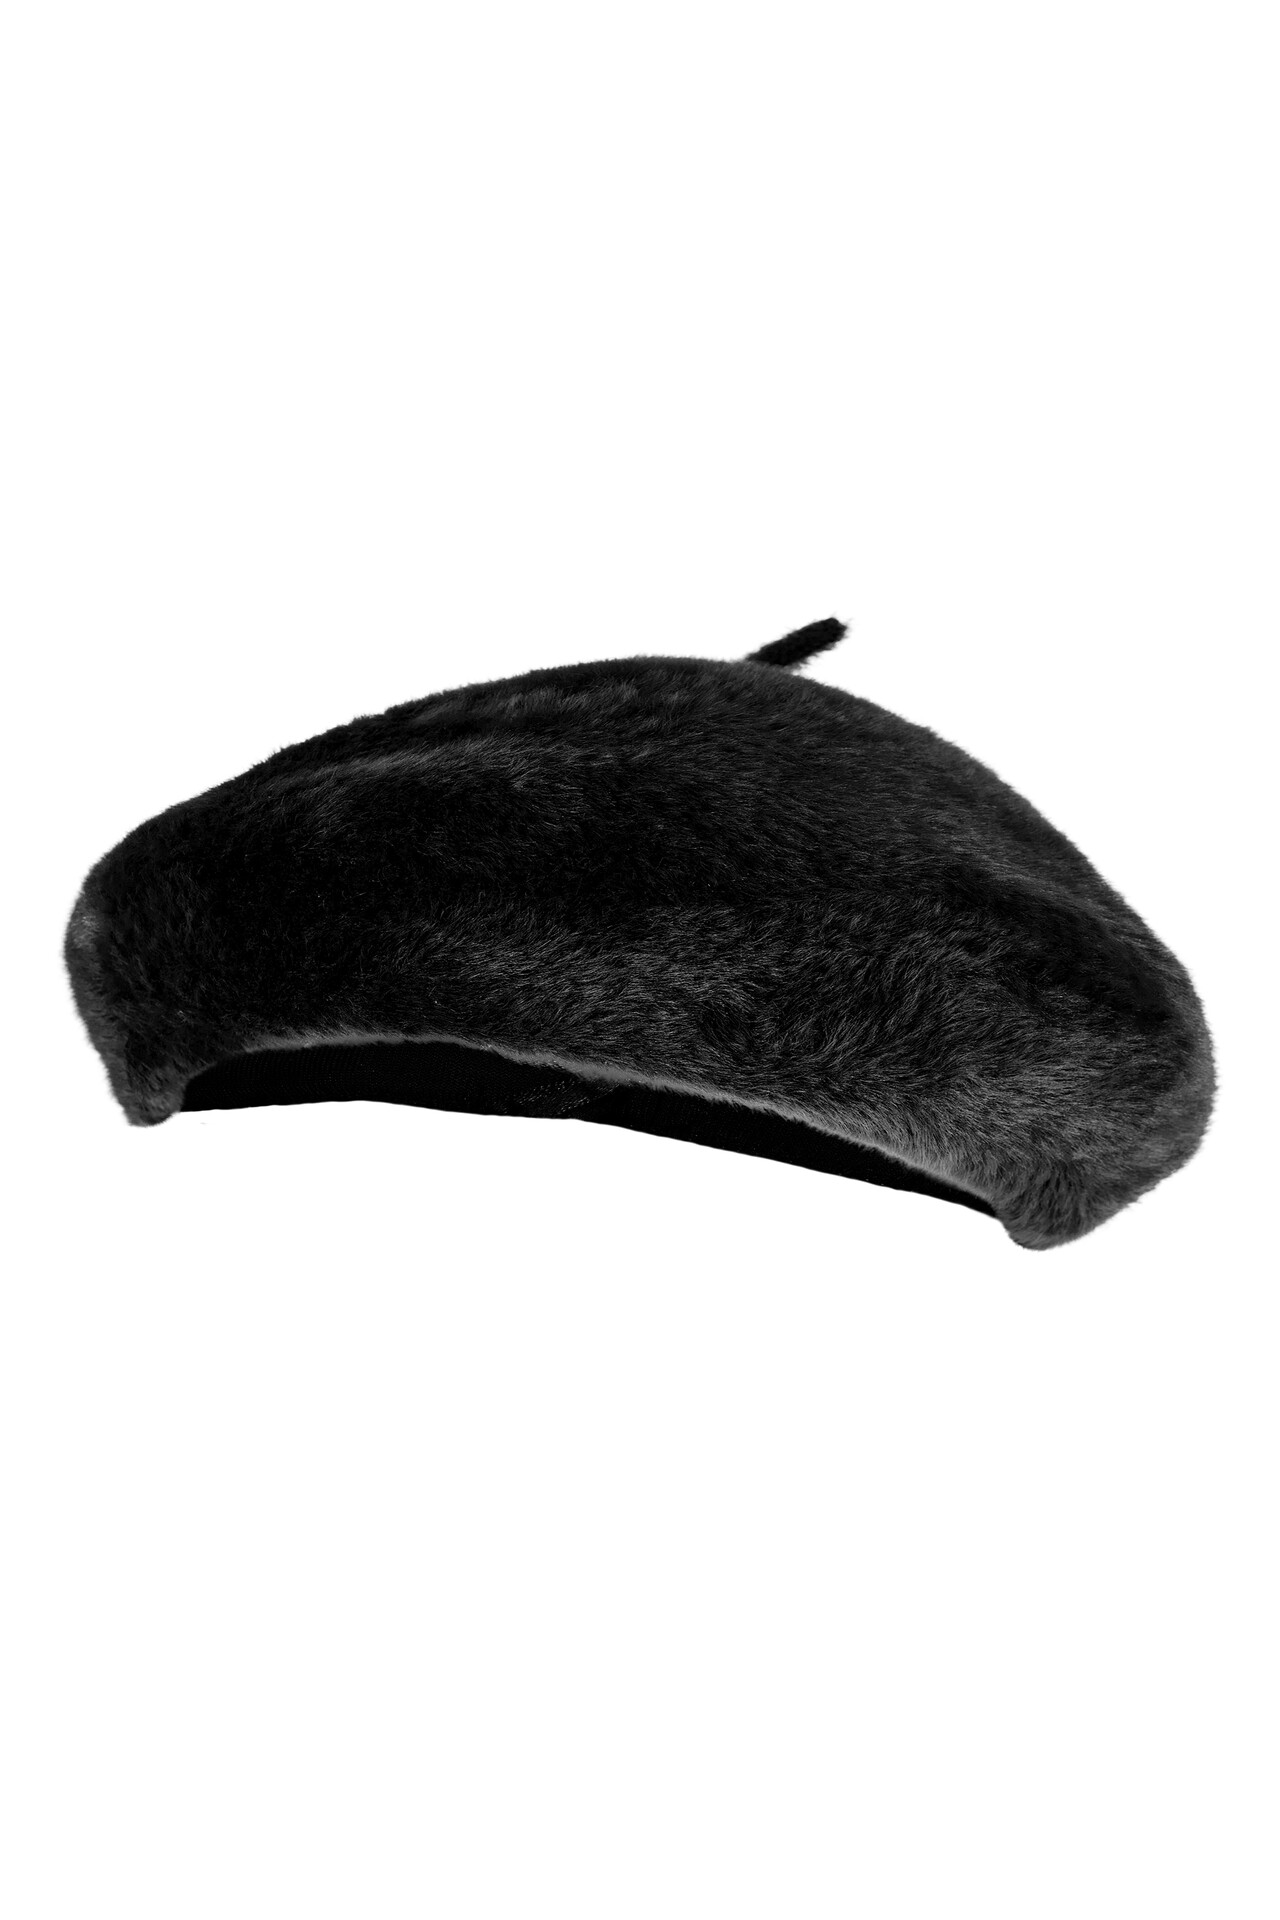 CRÉTON Brooklynn beret hat (SORT ONESIZE)